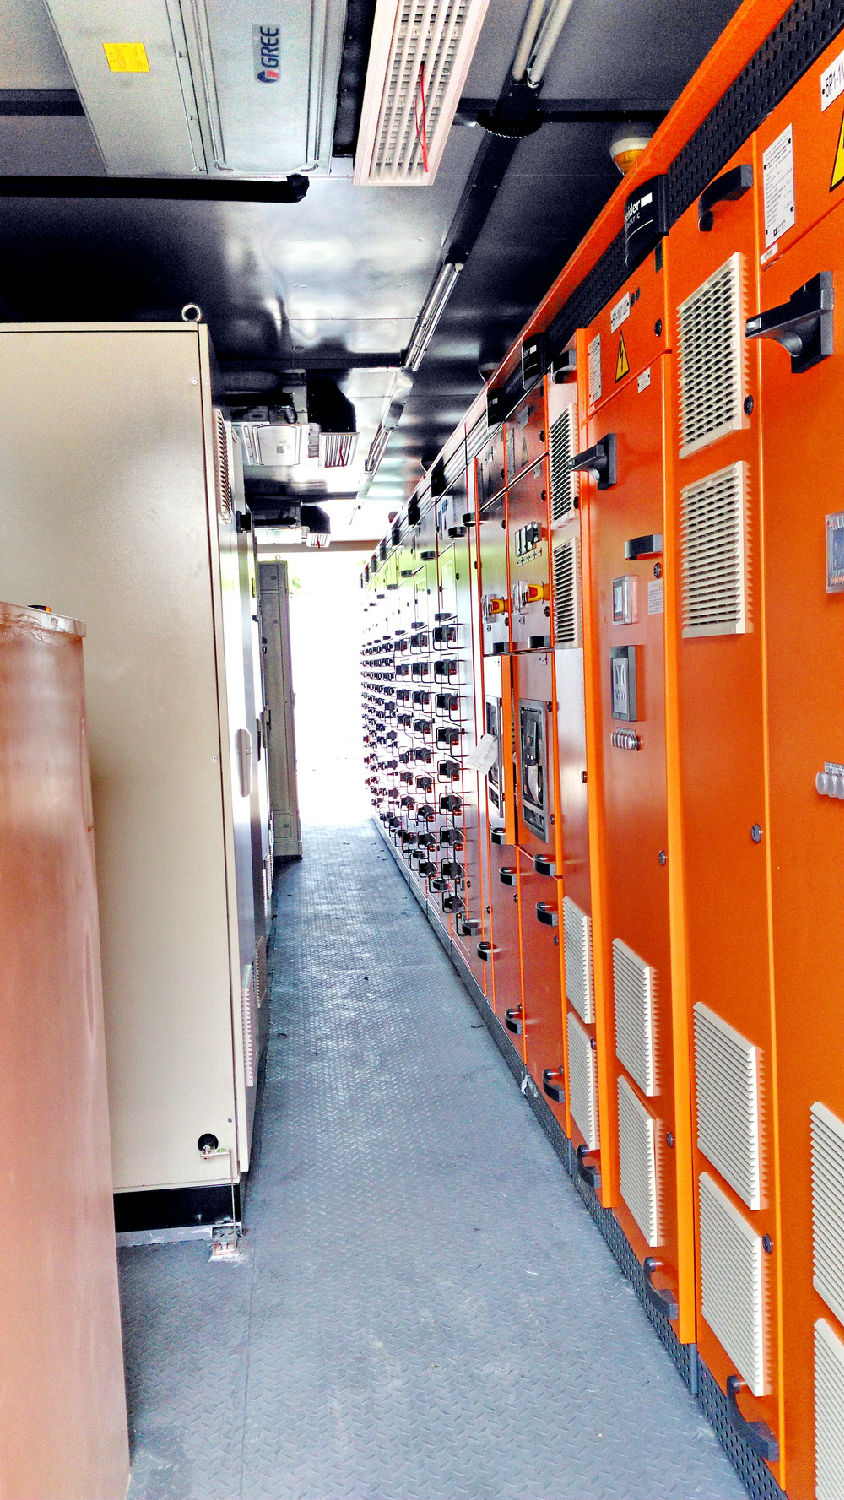 集装箱式变电站厂家 得润电气 400-128-7988